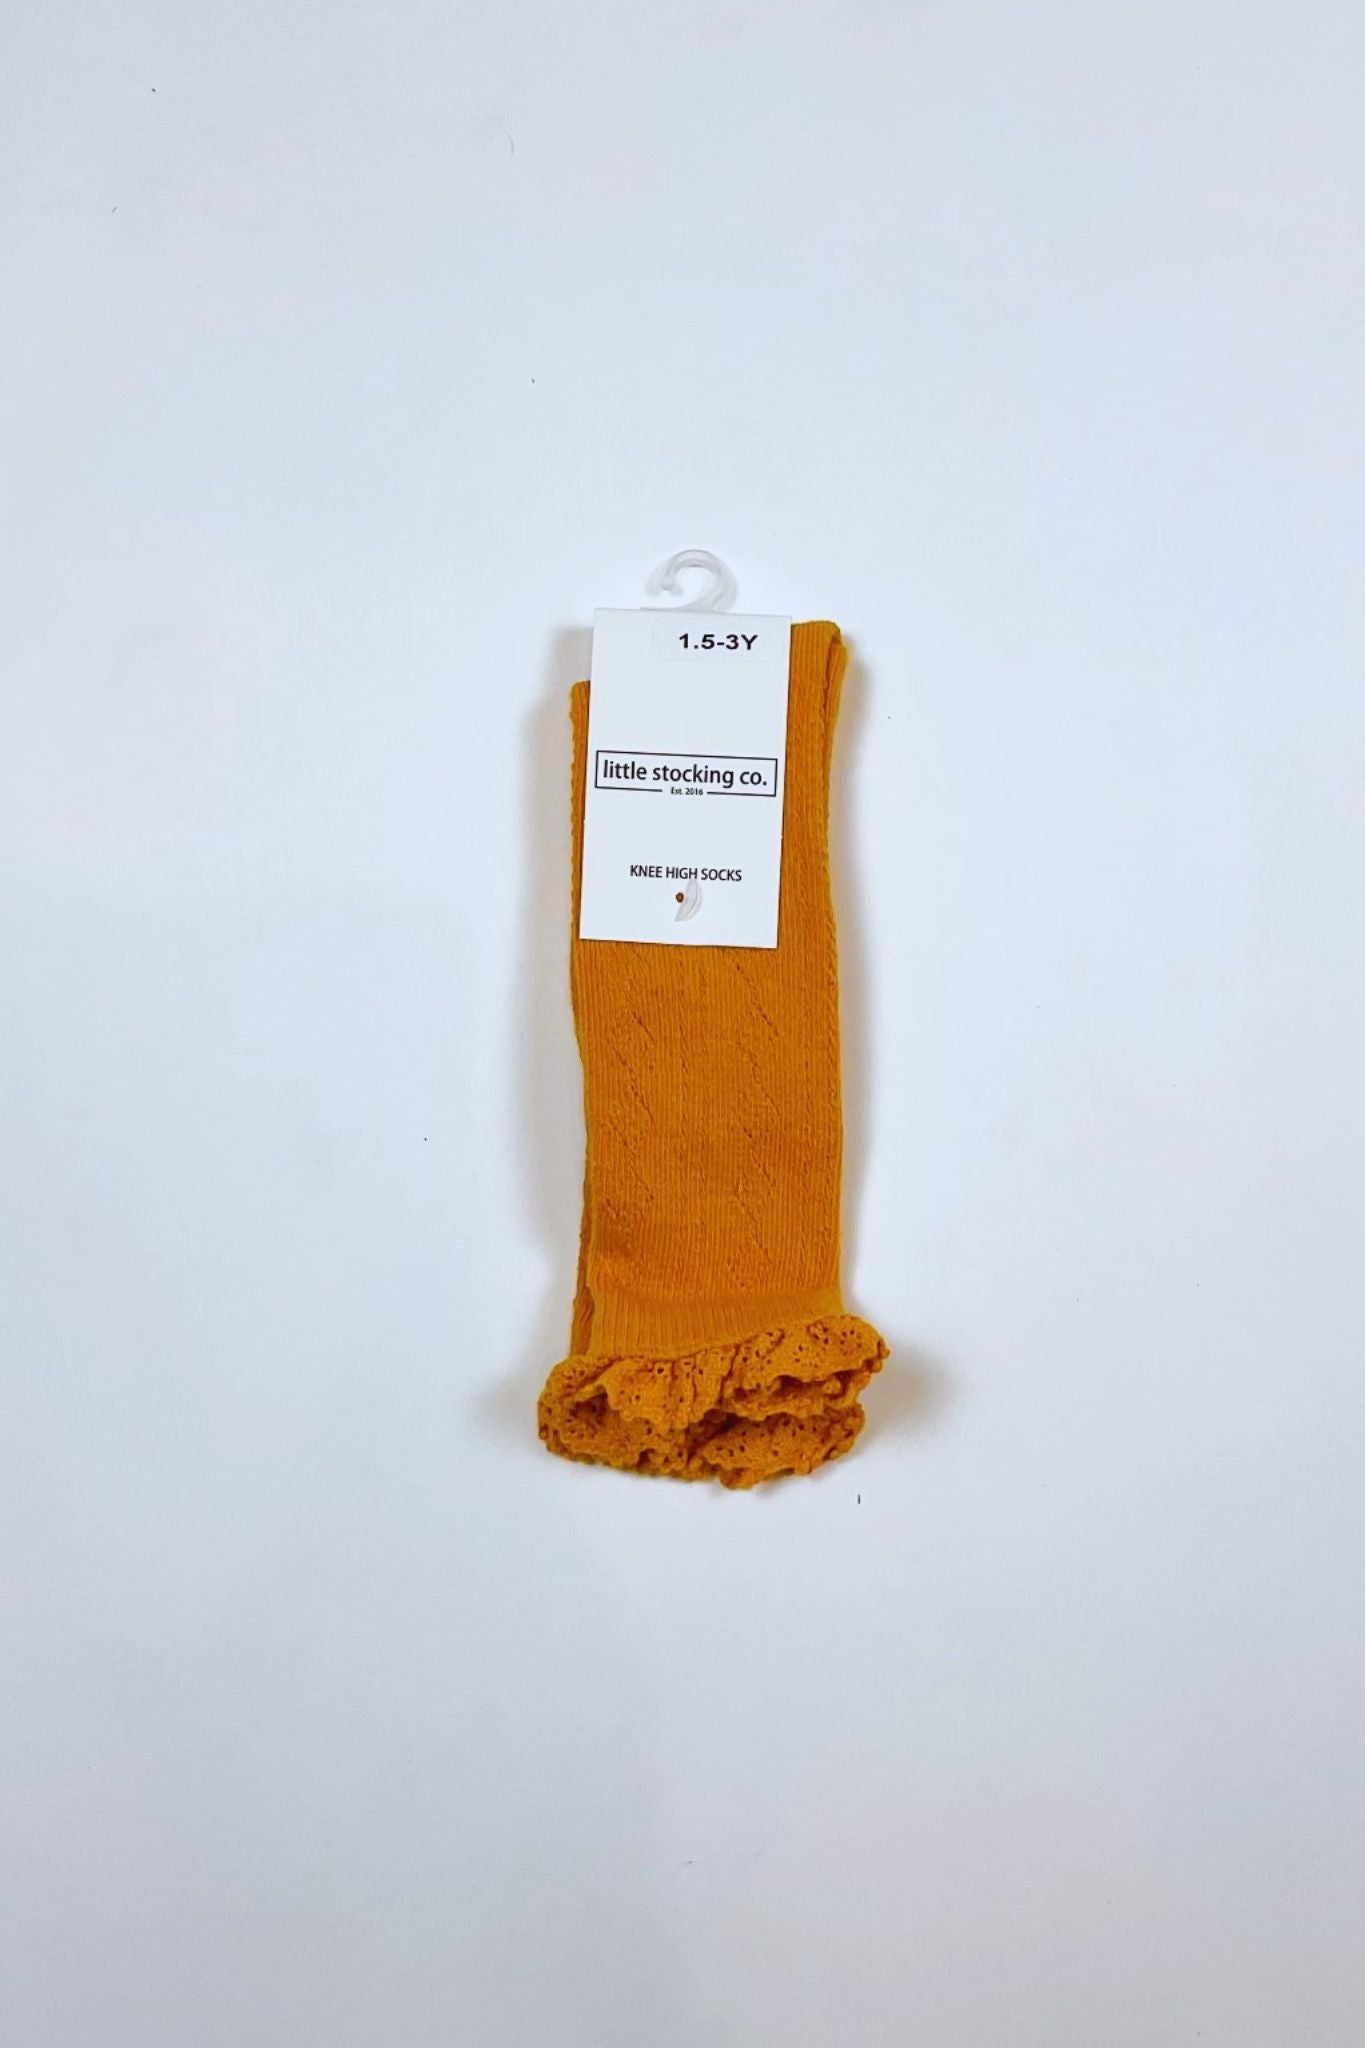 Little Stocking Co. Fancy Lace Top Knee High Socks